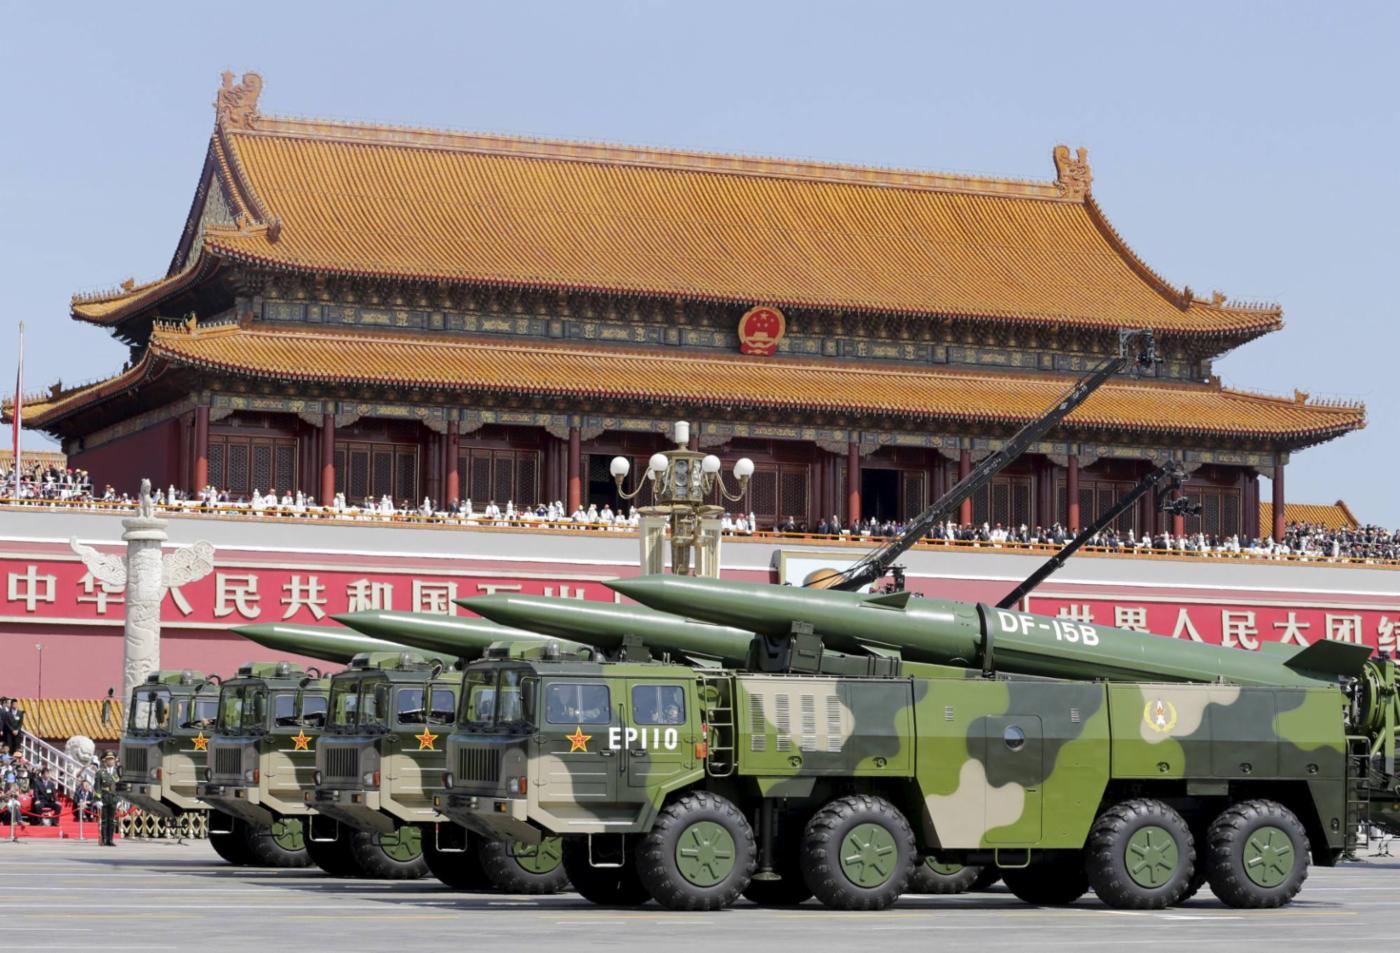  Зростання Китаю: у Білій оборонній книзі Японії 2021 року зазначено, що Китай «зайнявся швидким і широкомасштабним покращанням своєї військової потужності в кількісному і якісному вимірах». © Reuters
